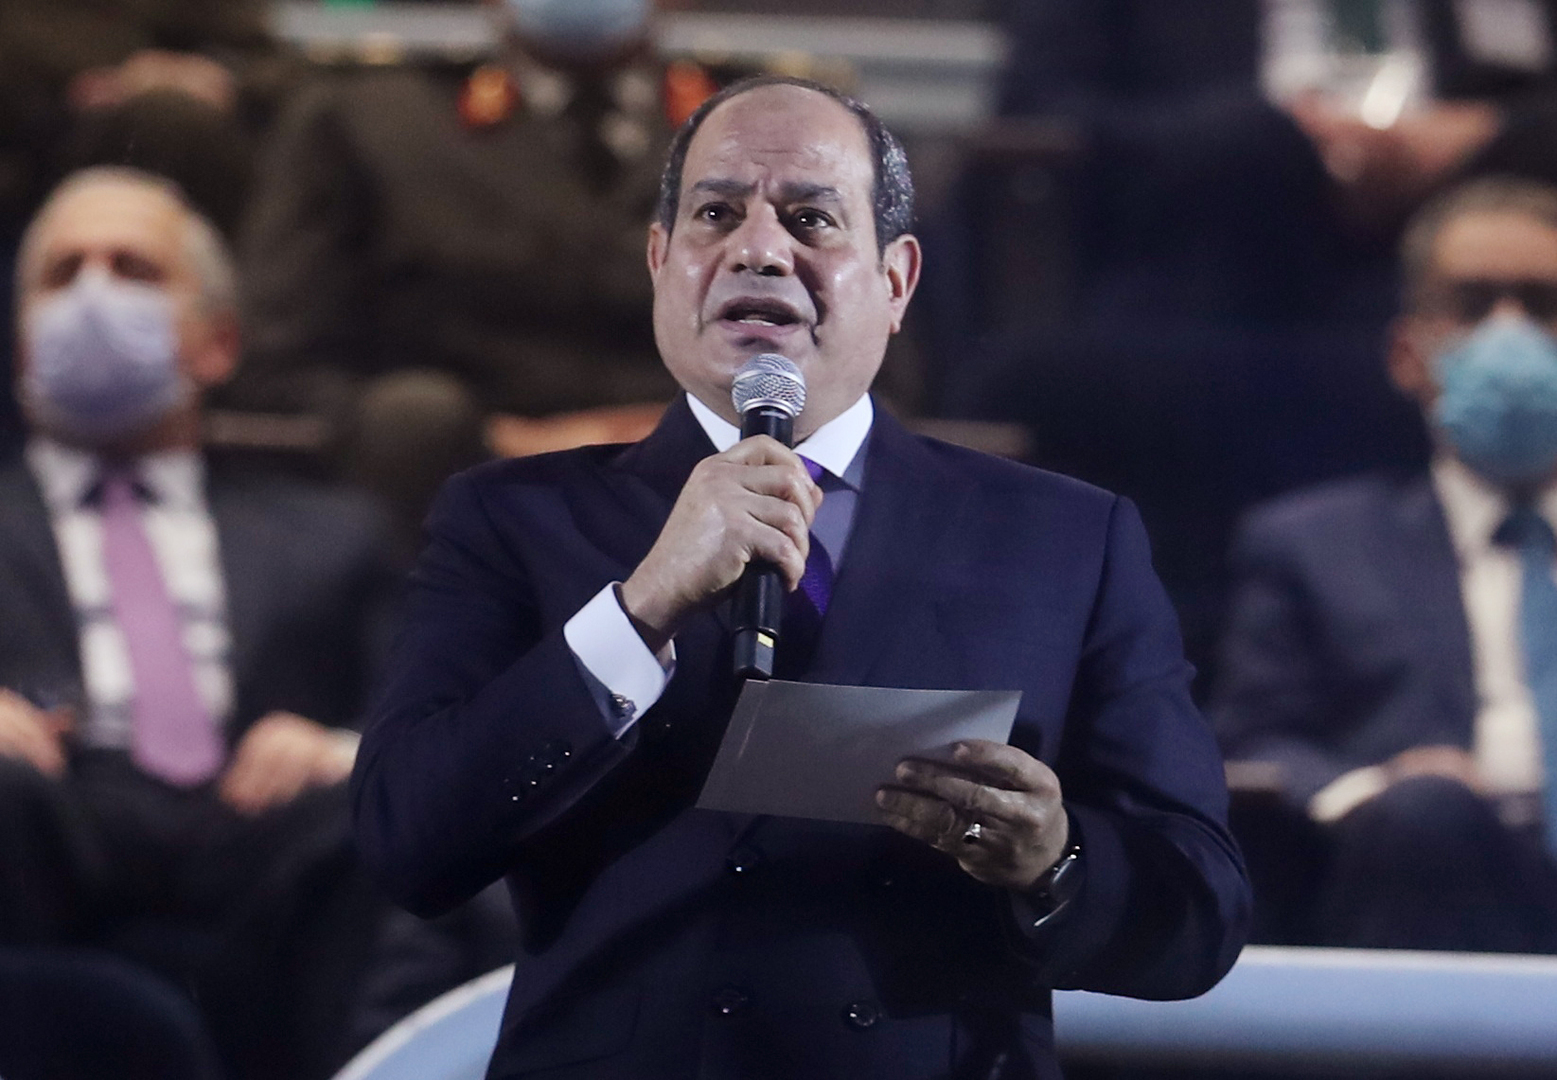 السيسي يصدر قرارا لأول مرة بشأن دار الإفتاء ومصير مجهول حول منصب مفتي مصر